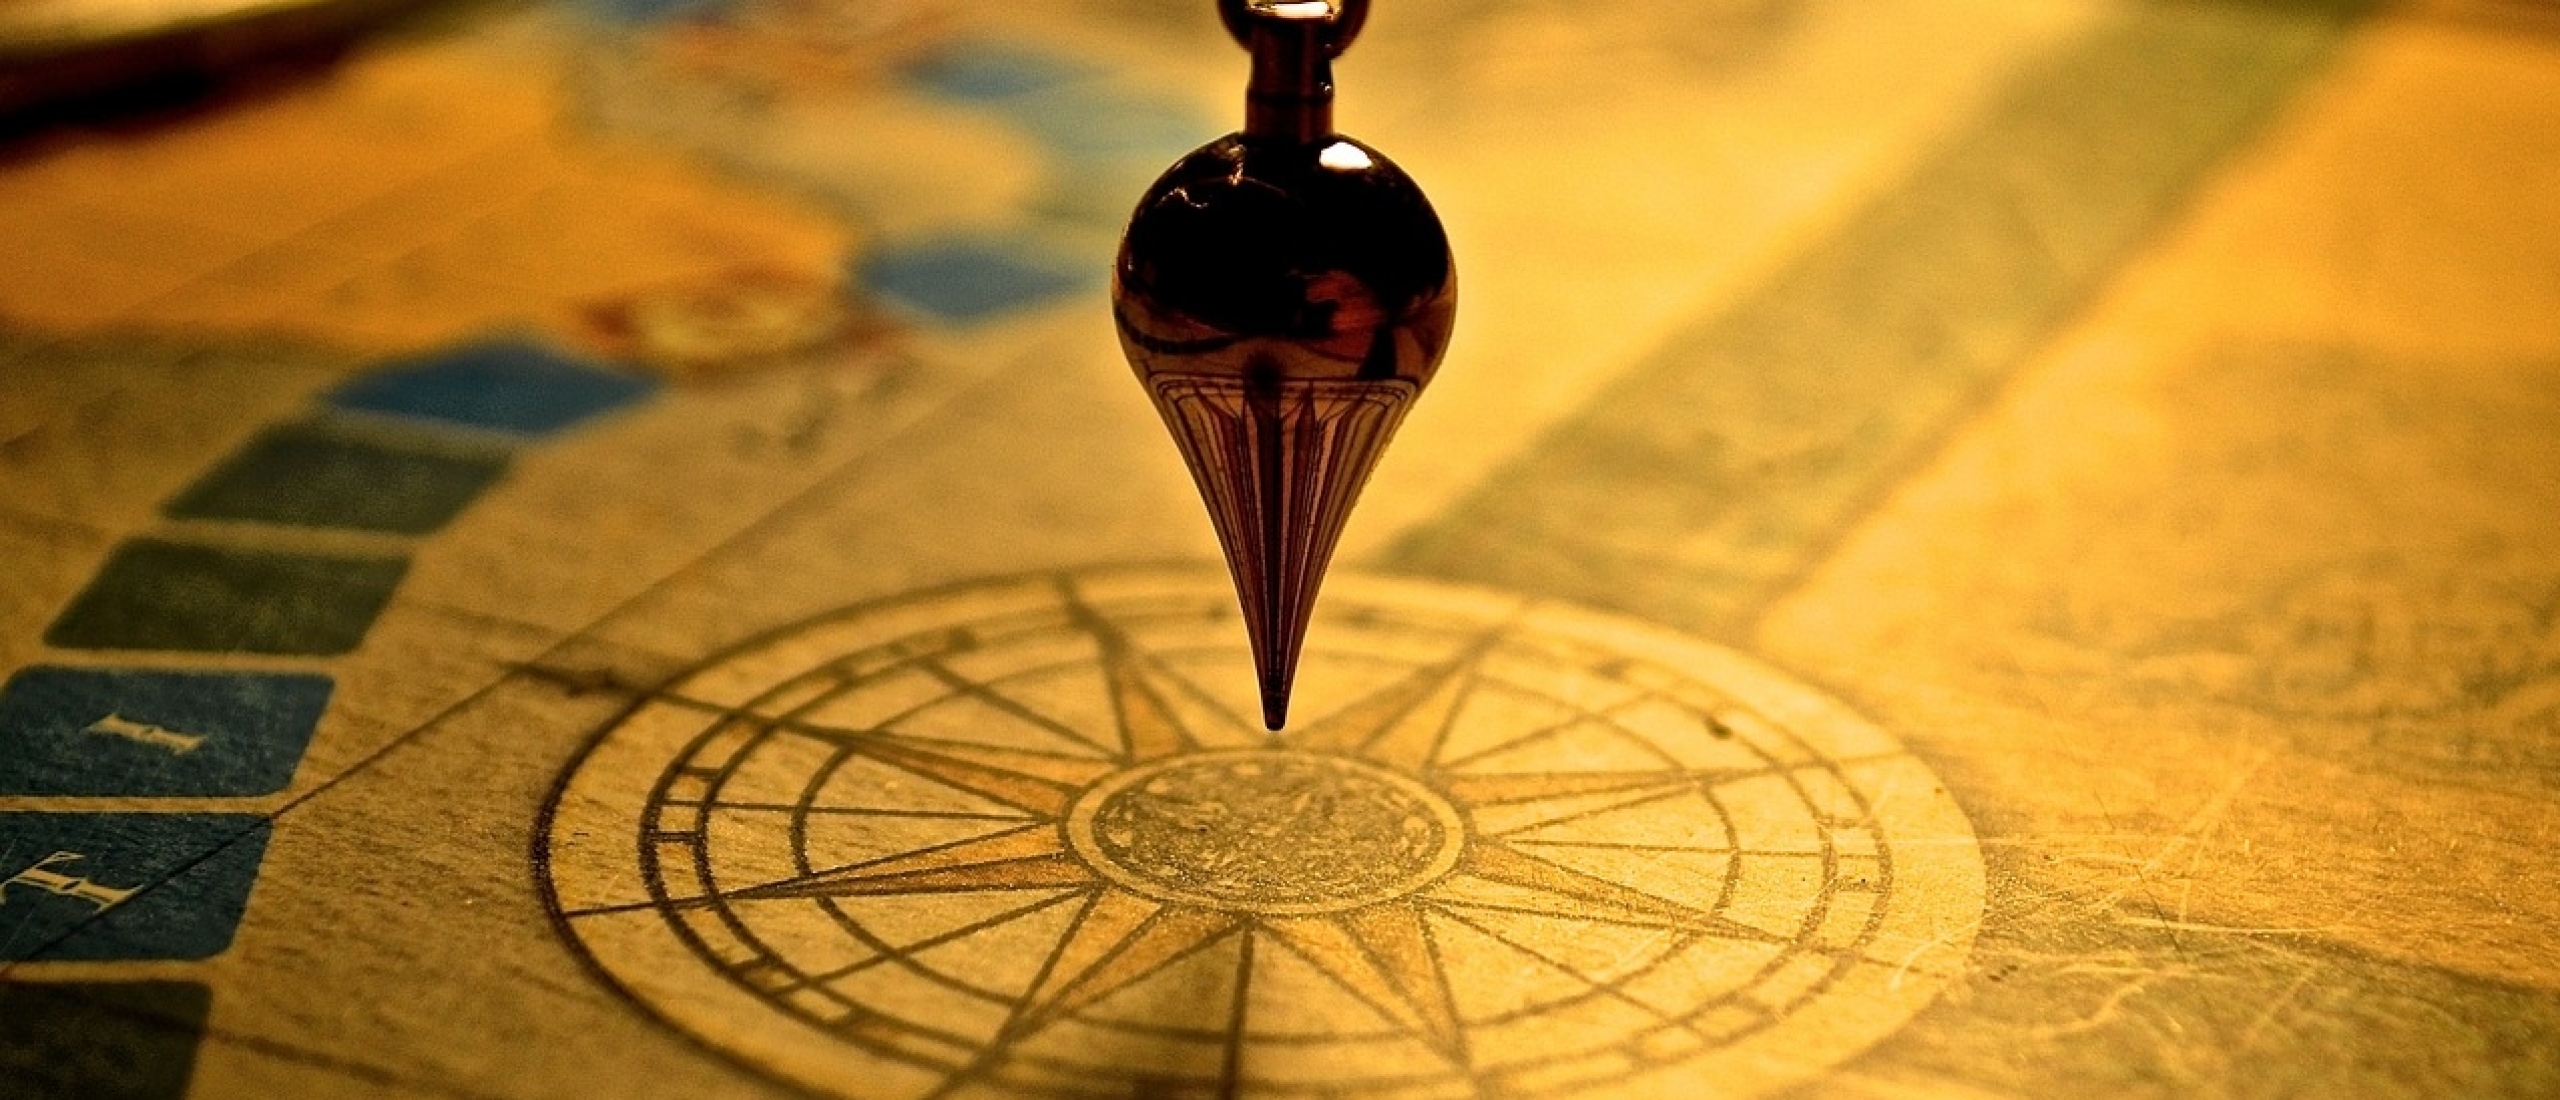 Stap 5 - Ontdek jouw innerlijke kompas met kernwaarden!